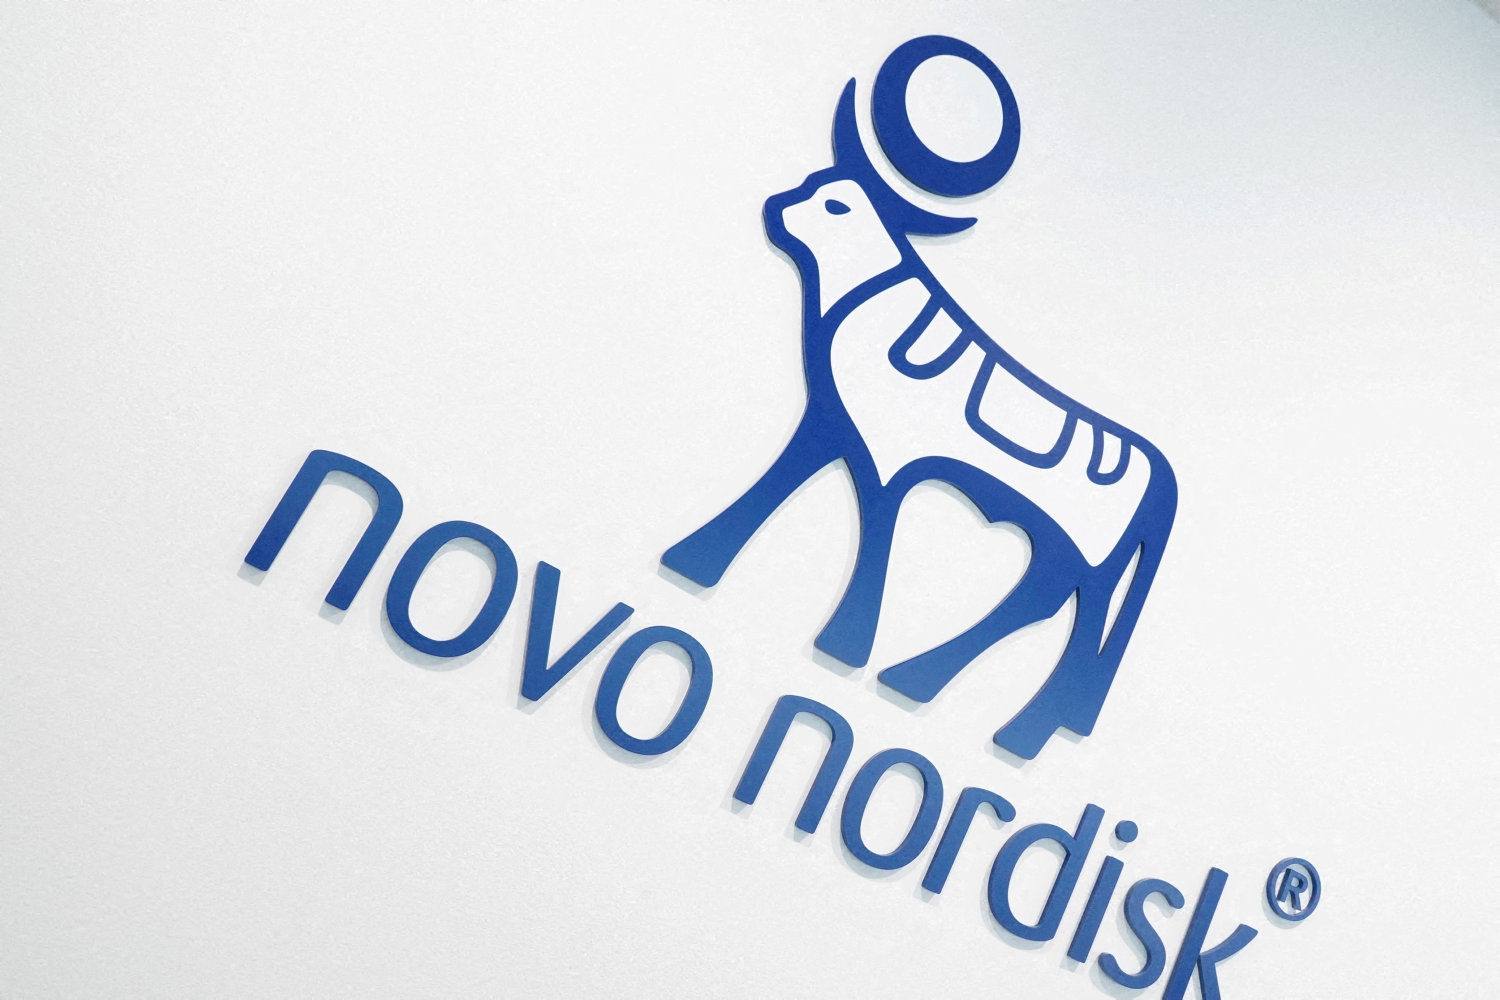 novo nordisk sendes i vejret på børsen efter opjustering fra rival